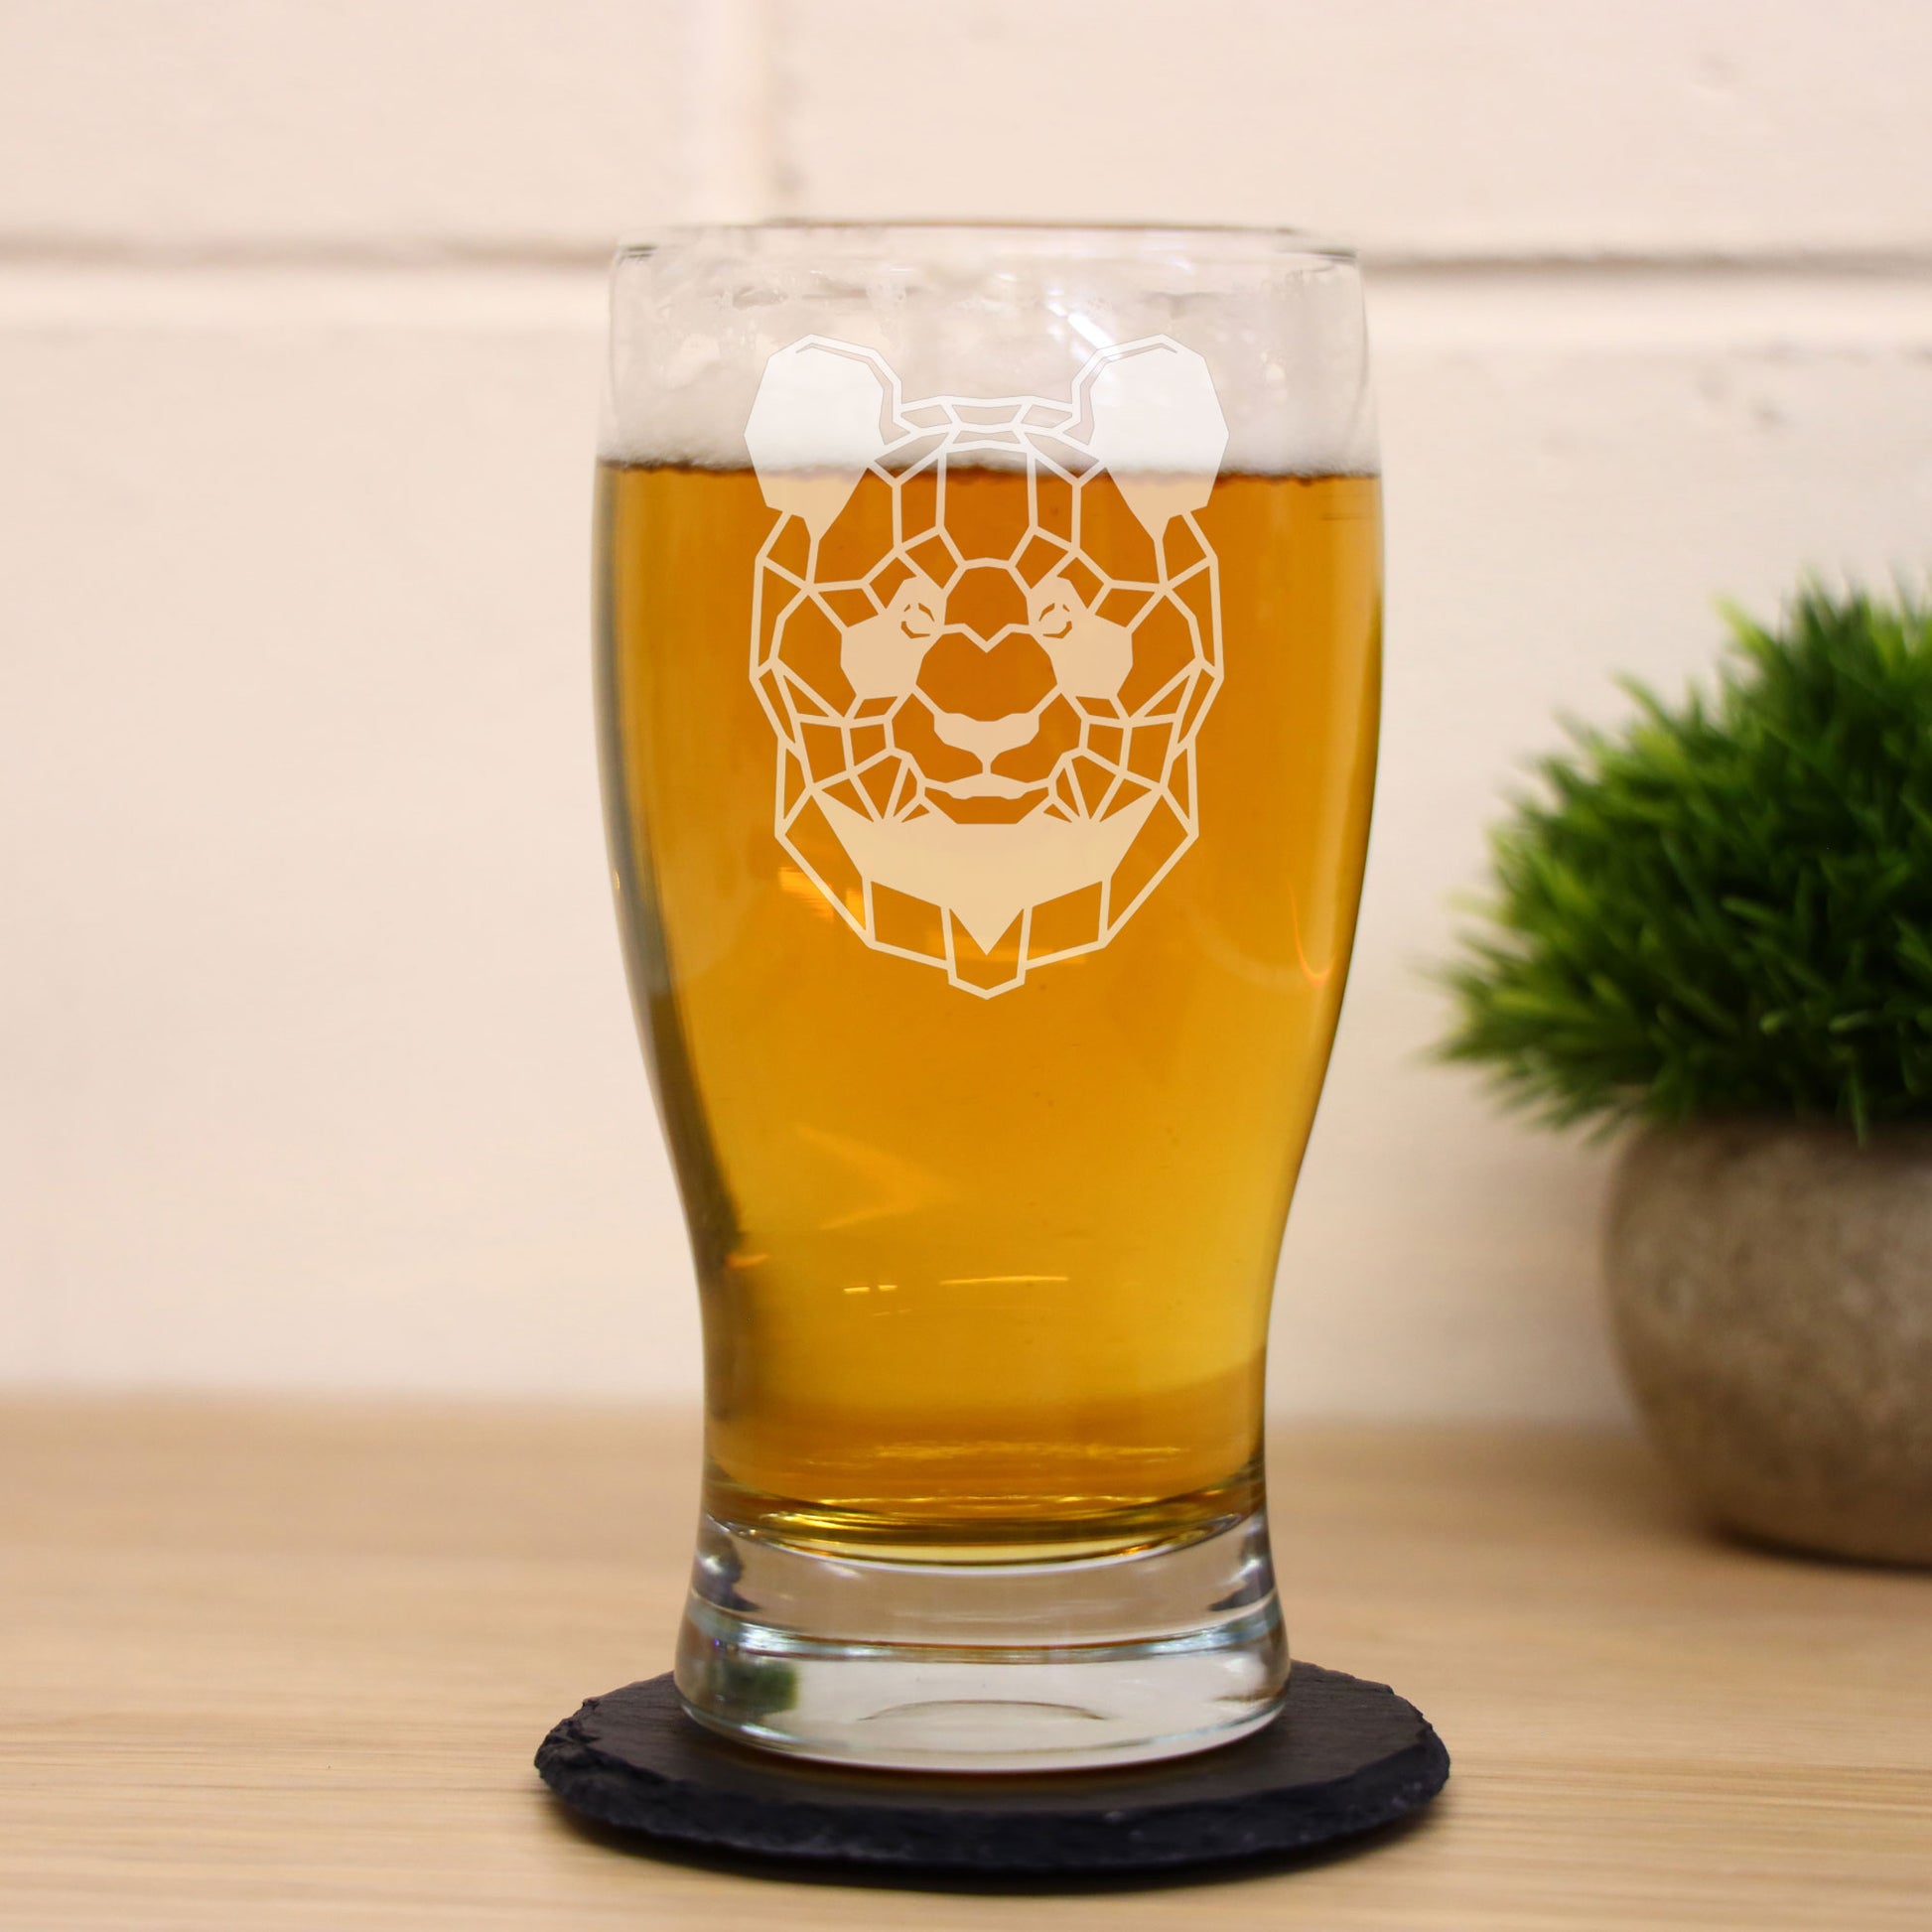 Panda Engraved Beer Pint Glass  - Always Looking Good -   